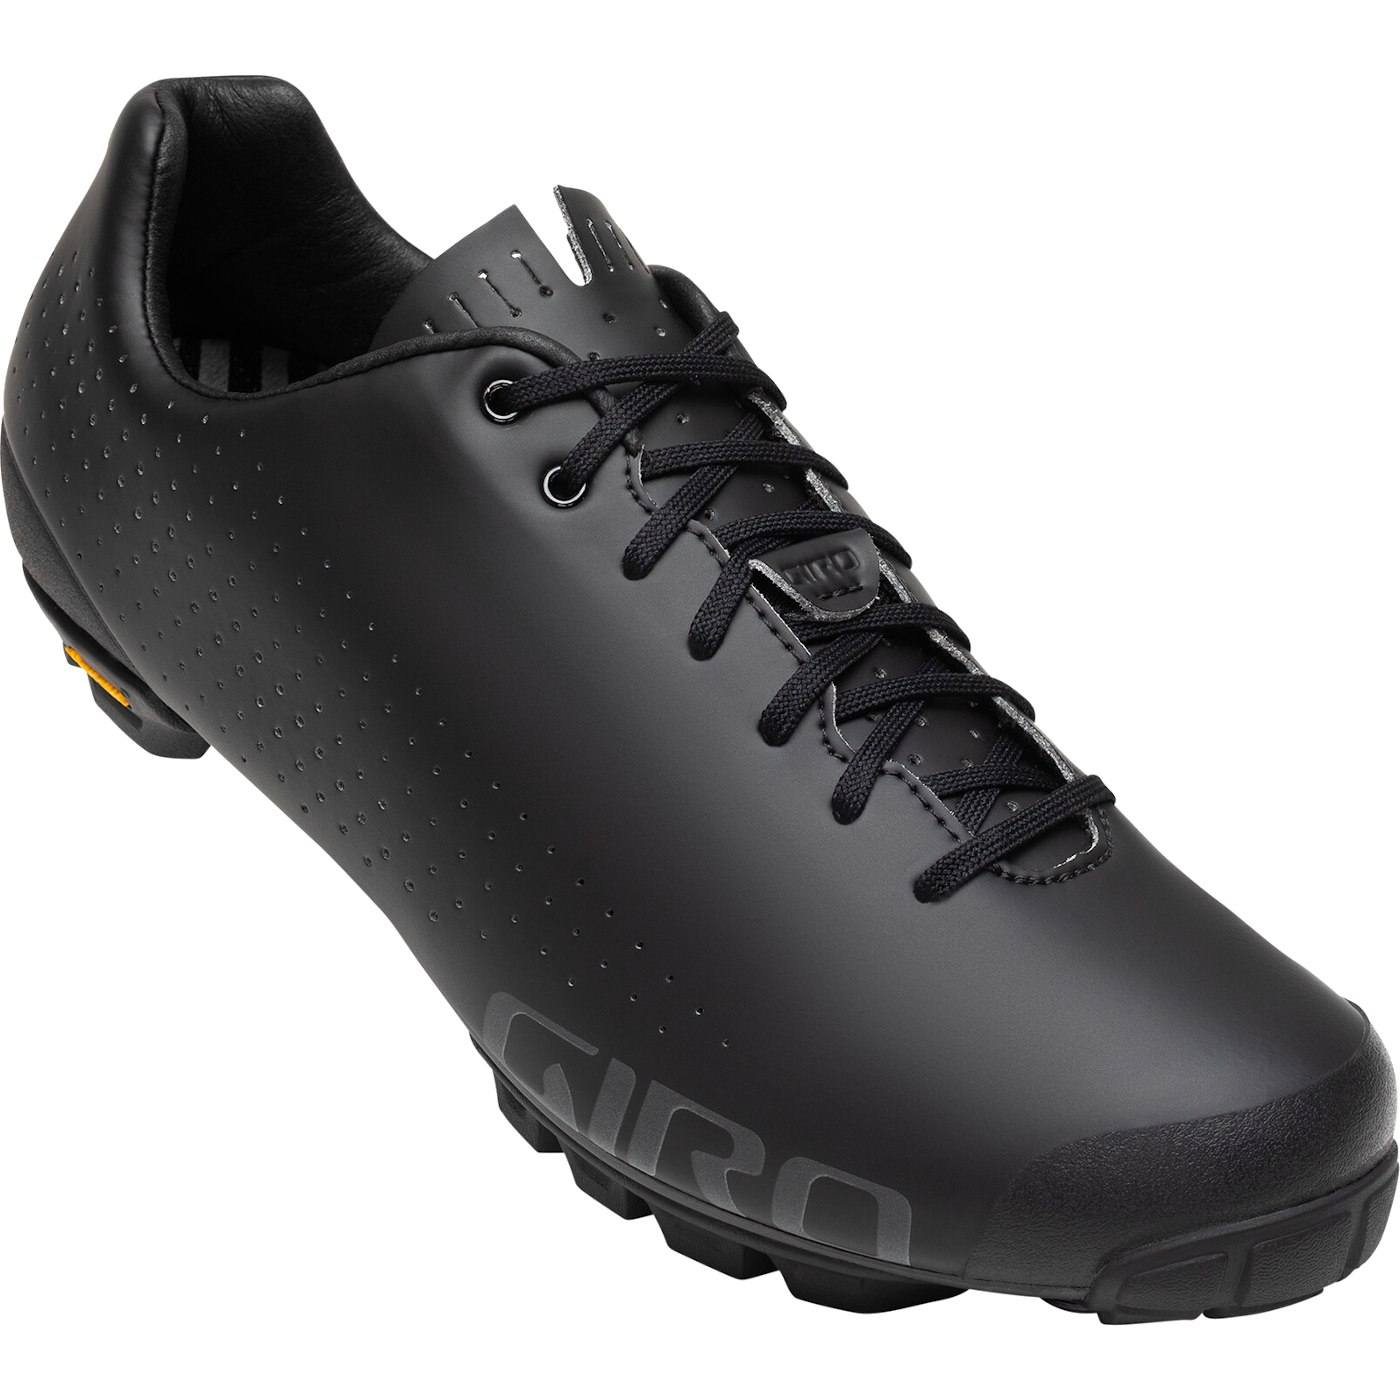 Produktbild von Giro Empire VR90 MTB Schuhe - schwarz